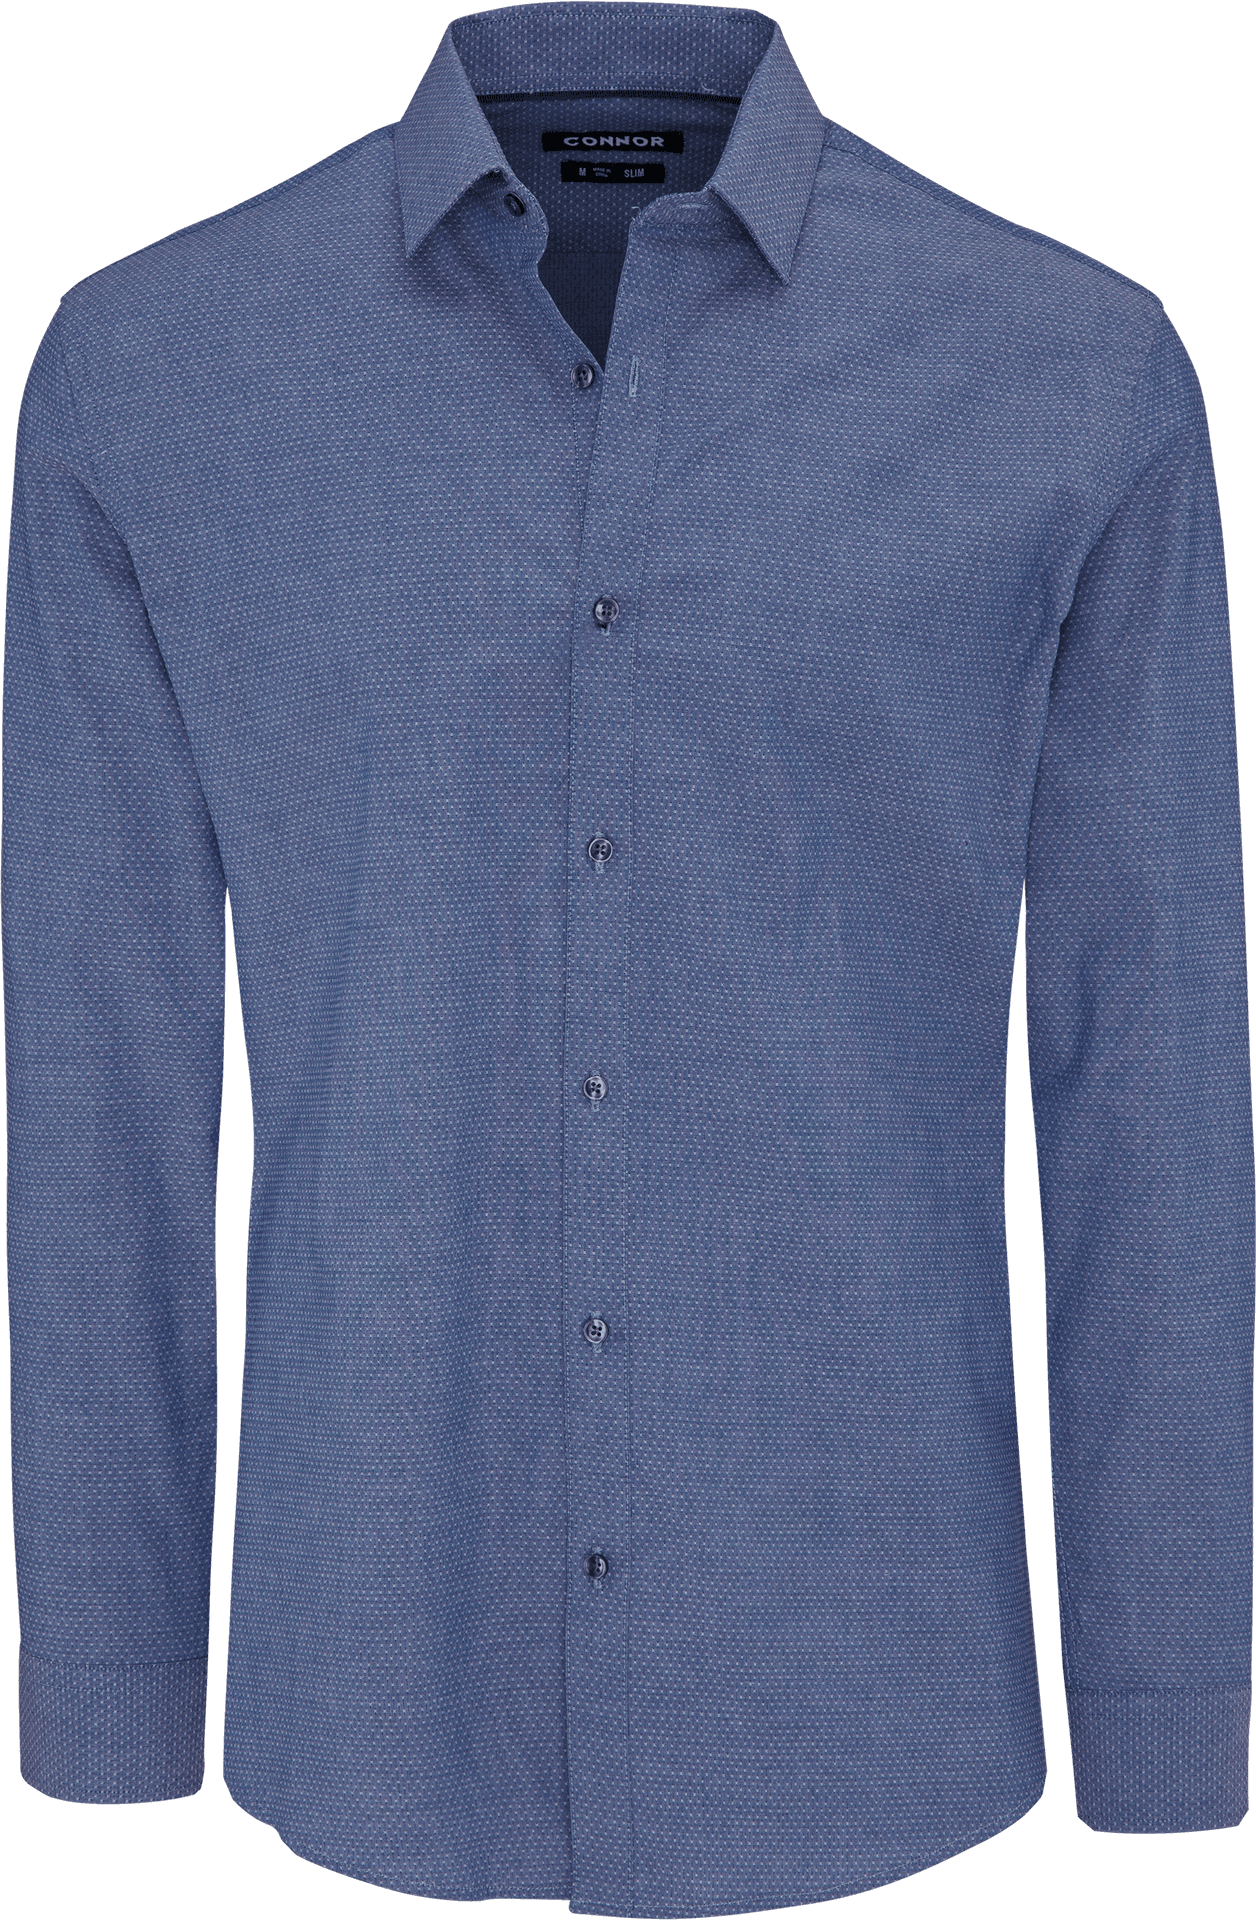 Blue Textured Dress Shirt PNG